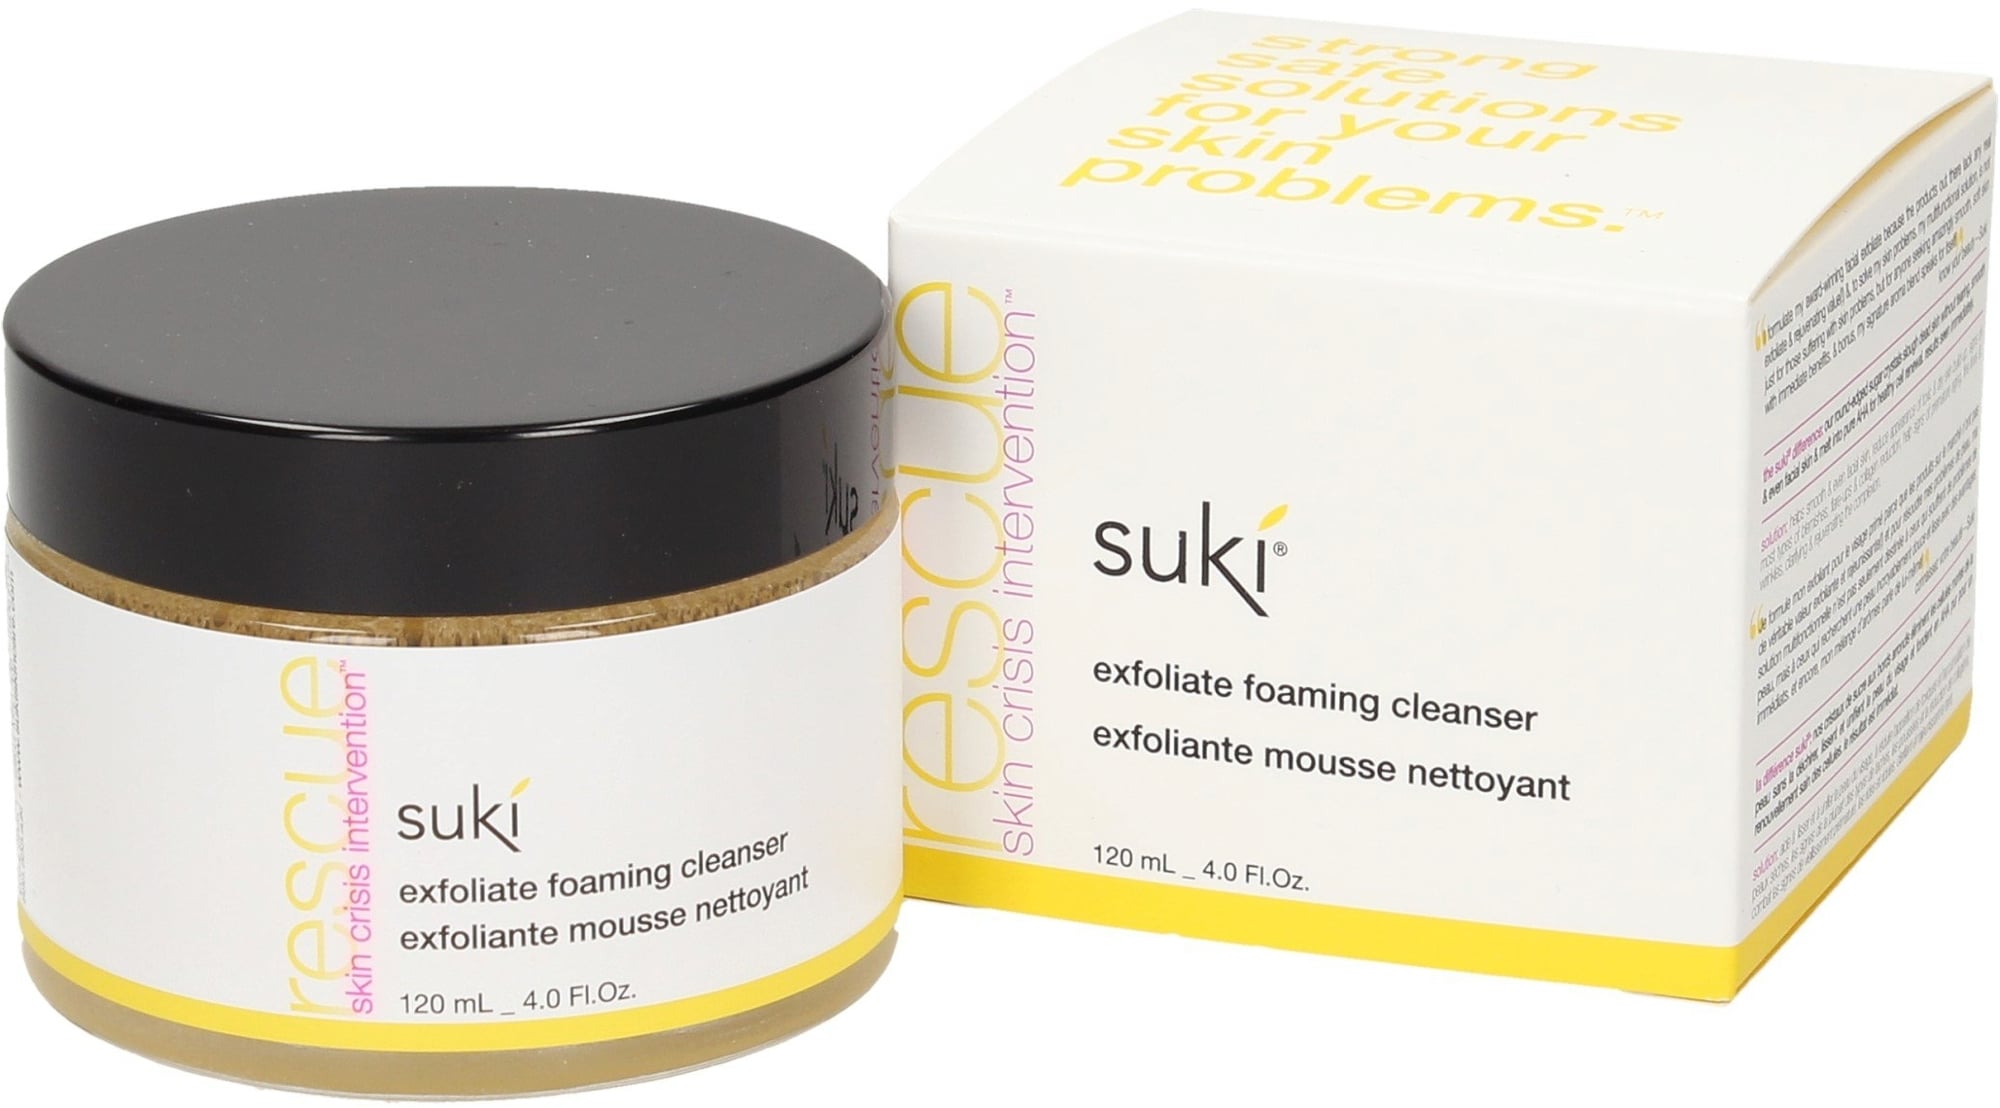 Suki Skincare exfoliate foaming cleanser - 120 ml